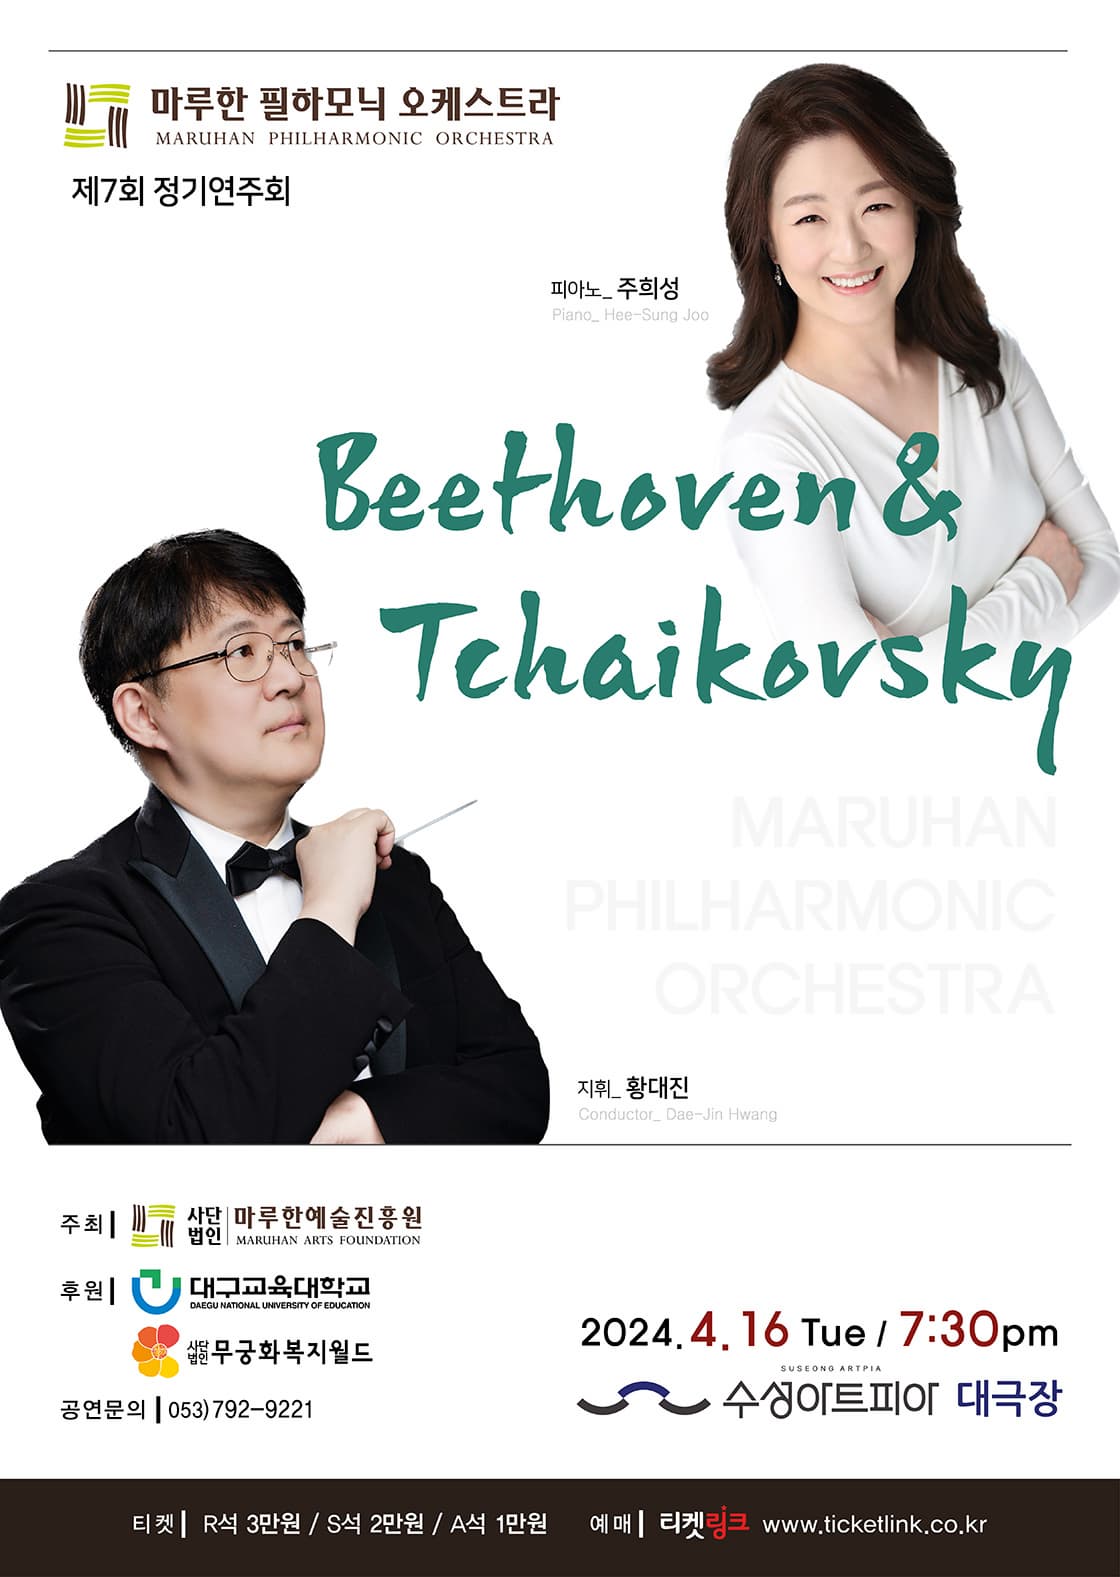 [음악][대구] 제7회 마루한 필하모닉 오케스트라 정기연주회: Beethoven & Tchaikovsky